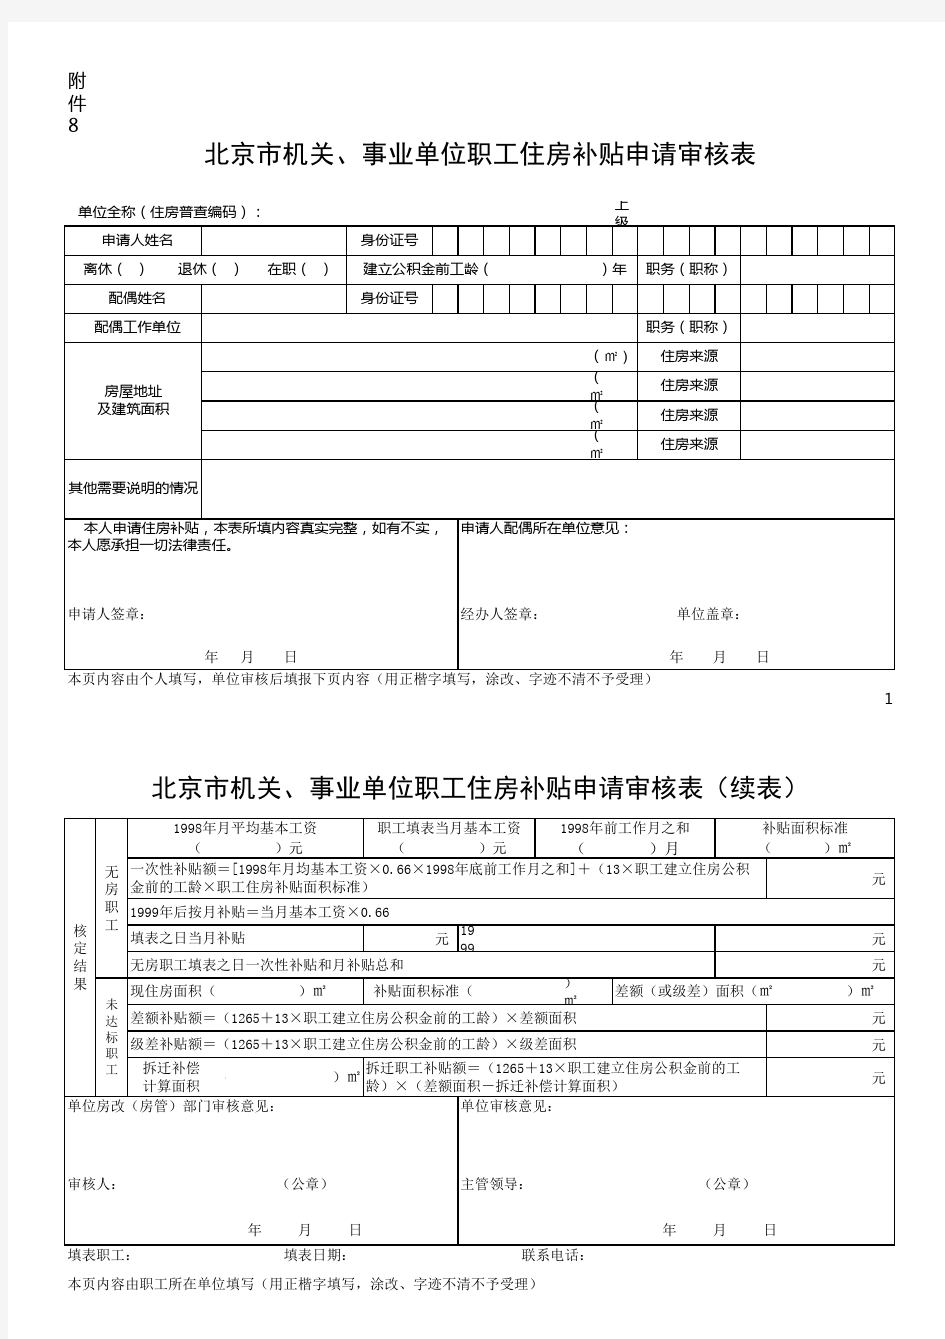 北京市机关、事业单位职工住房补贴申请审核表